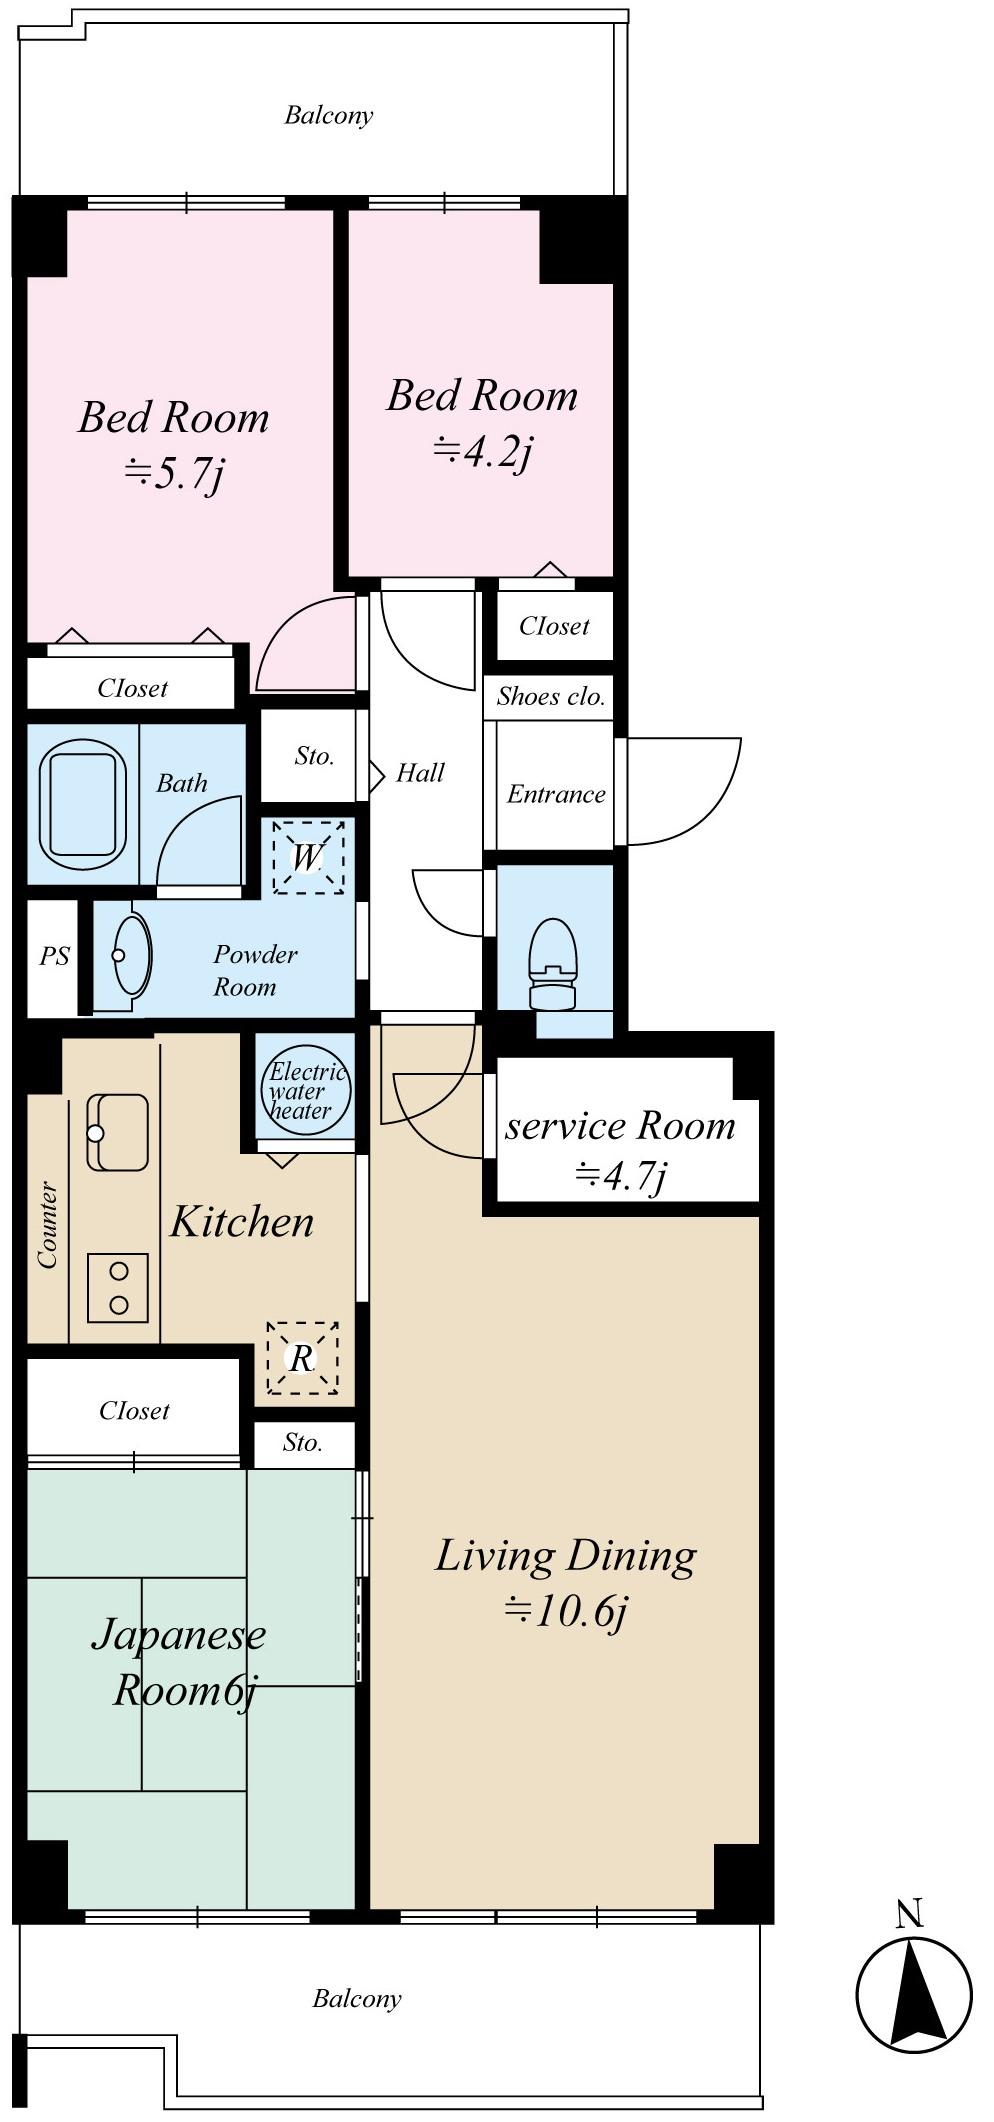 Floor plan. 3LDK + S (storeroom), Price 29,800,000 yen, Occupied area 74.61 sq m , Balcony area 15.46 sq m floor plan